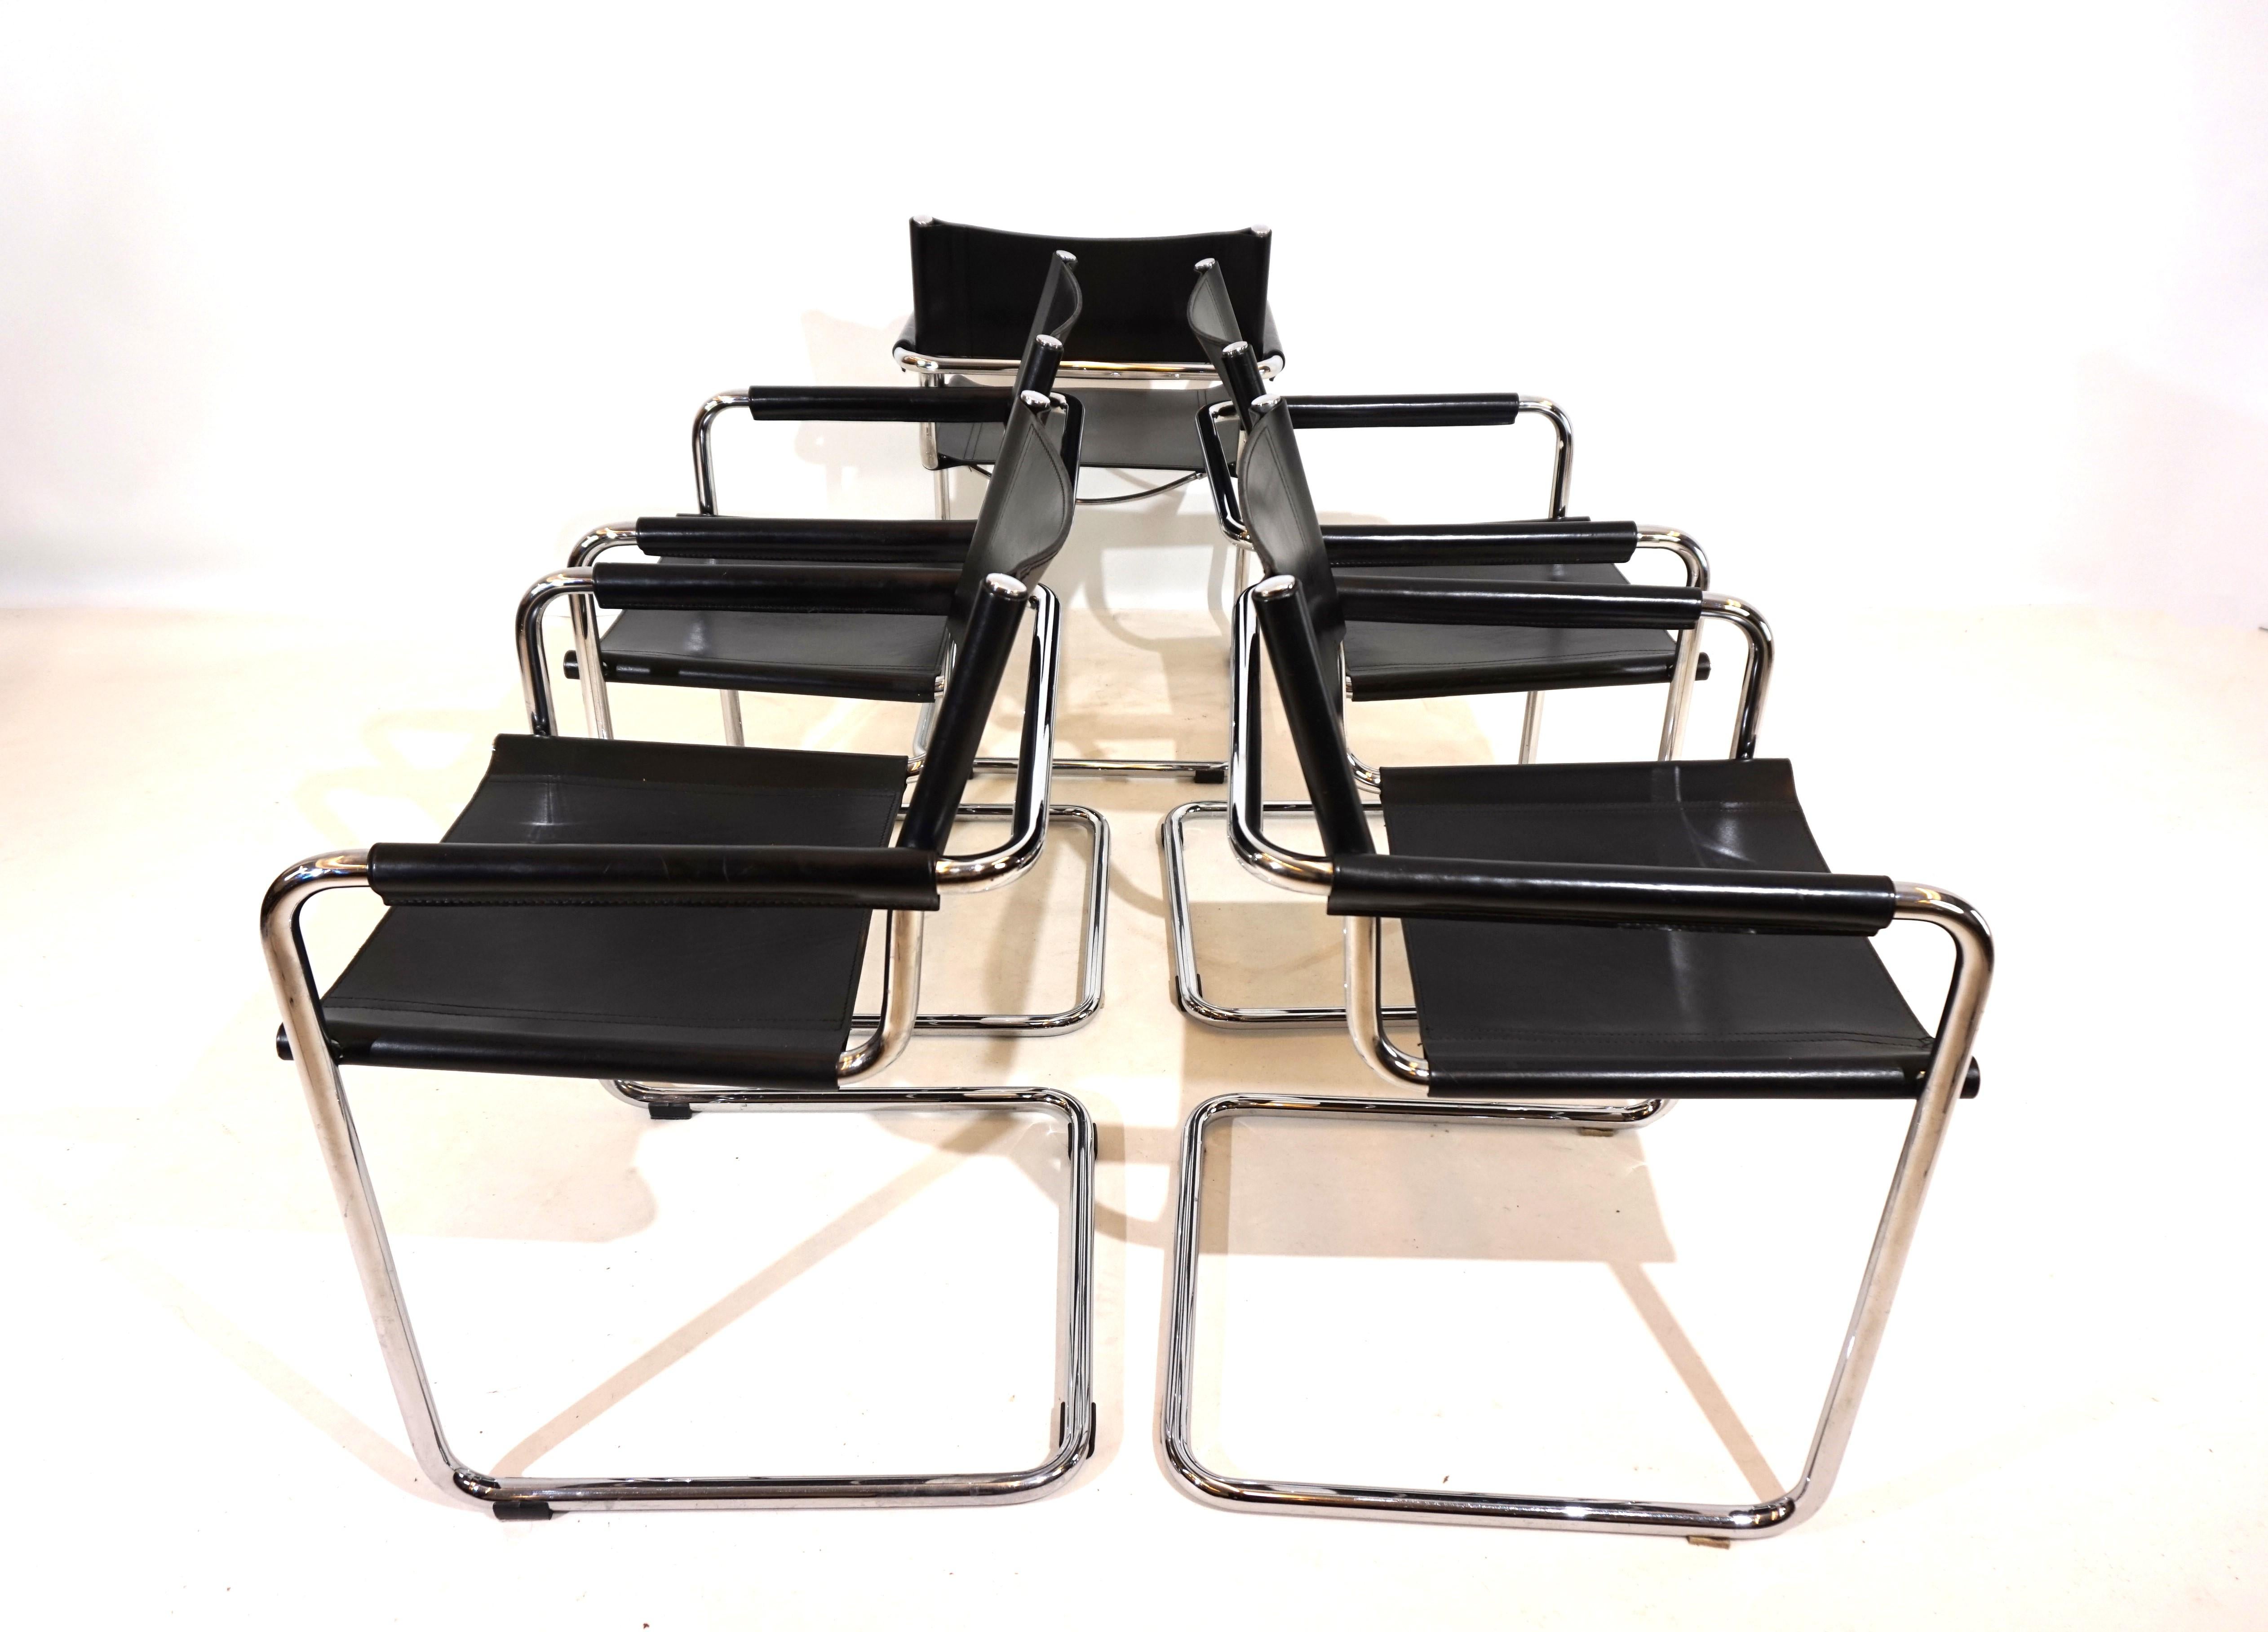 Dieses klassische Freischwinger-Set aus 5 MG5-Stühlen in schwarzem Sattelleder ist in ausgezeichnetem Zustand. Das dicke Leder weist minimale Gebrauchsspuren auf, die Chromrahmen sind in sehr gutem Zustand. Die Armlehnen sind in der exklusiveren